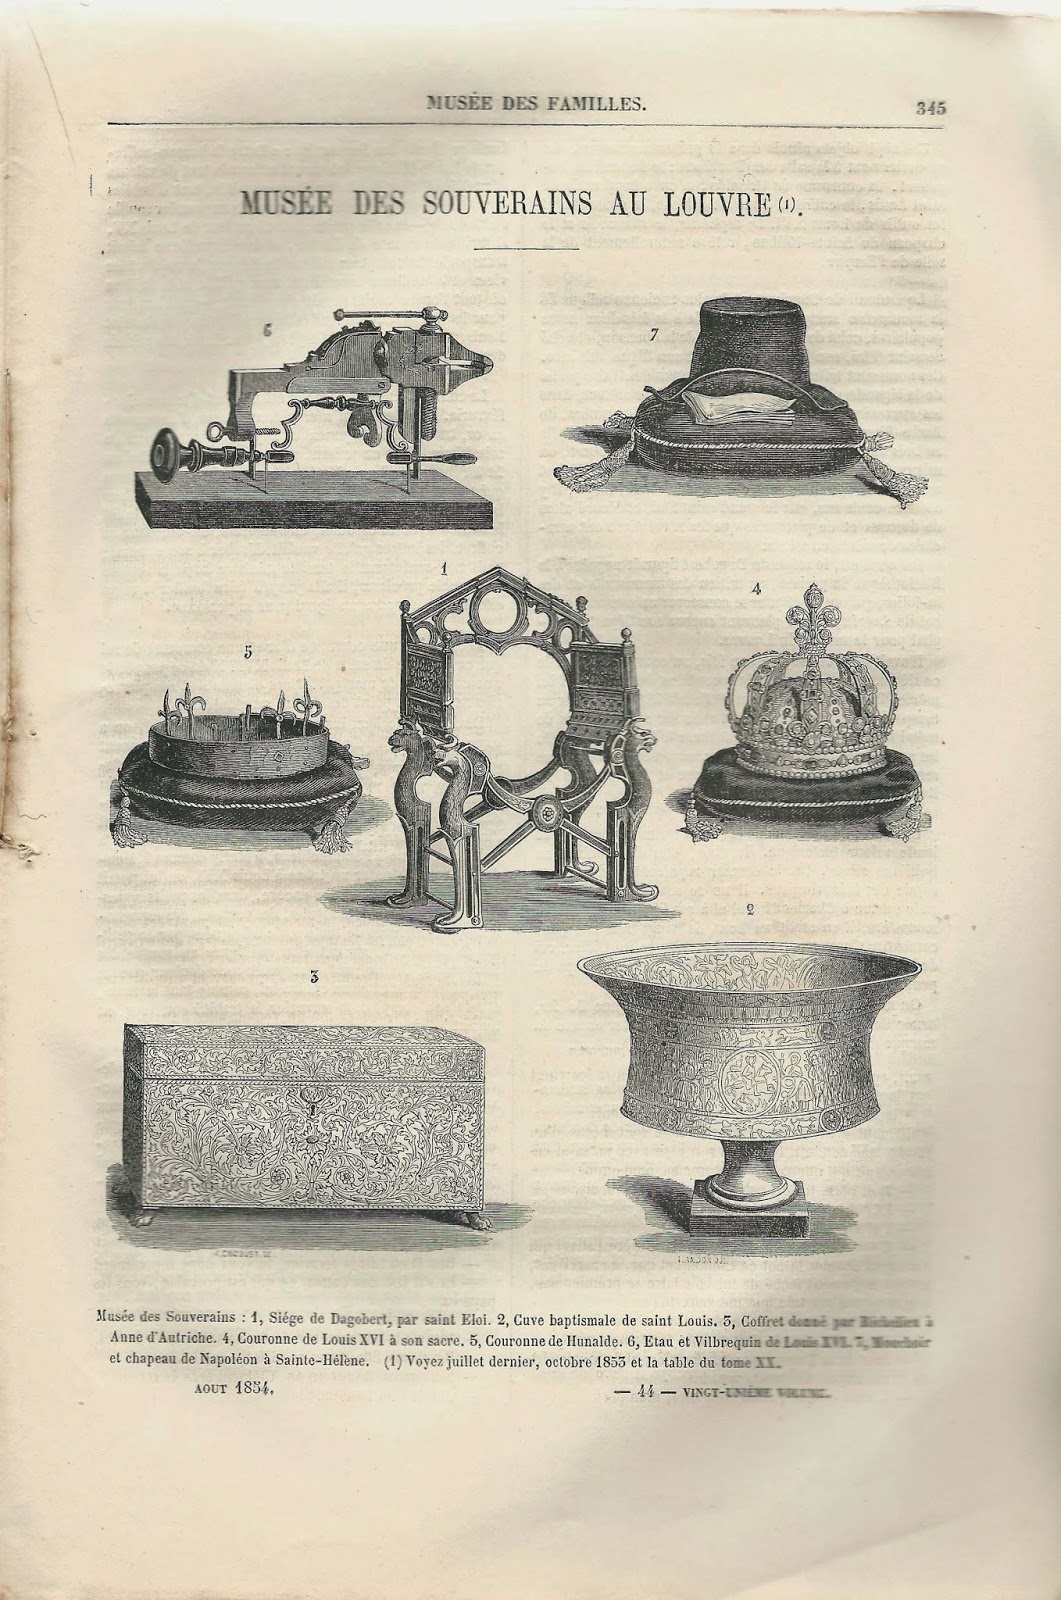 Encyclopédie de Diderot et d'Alembert